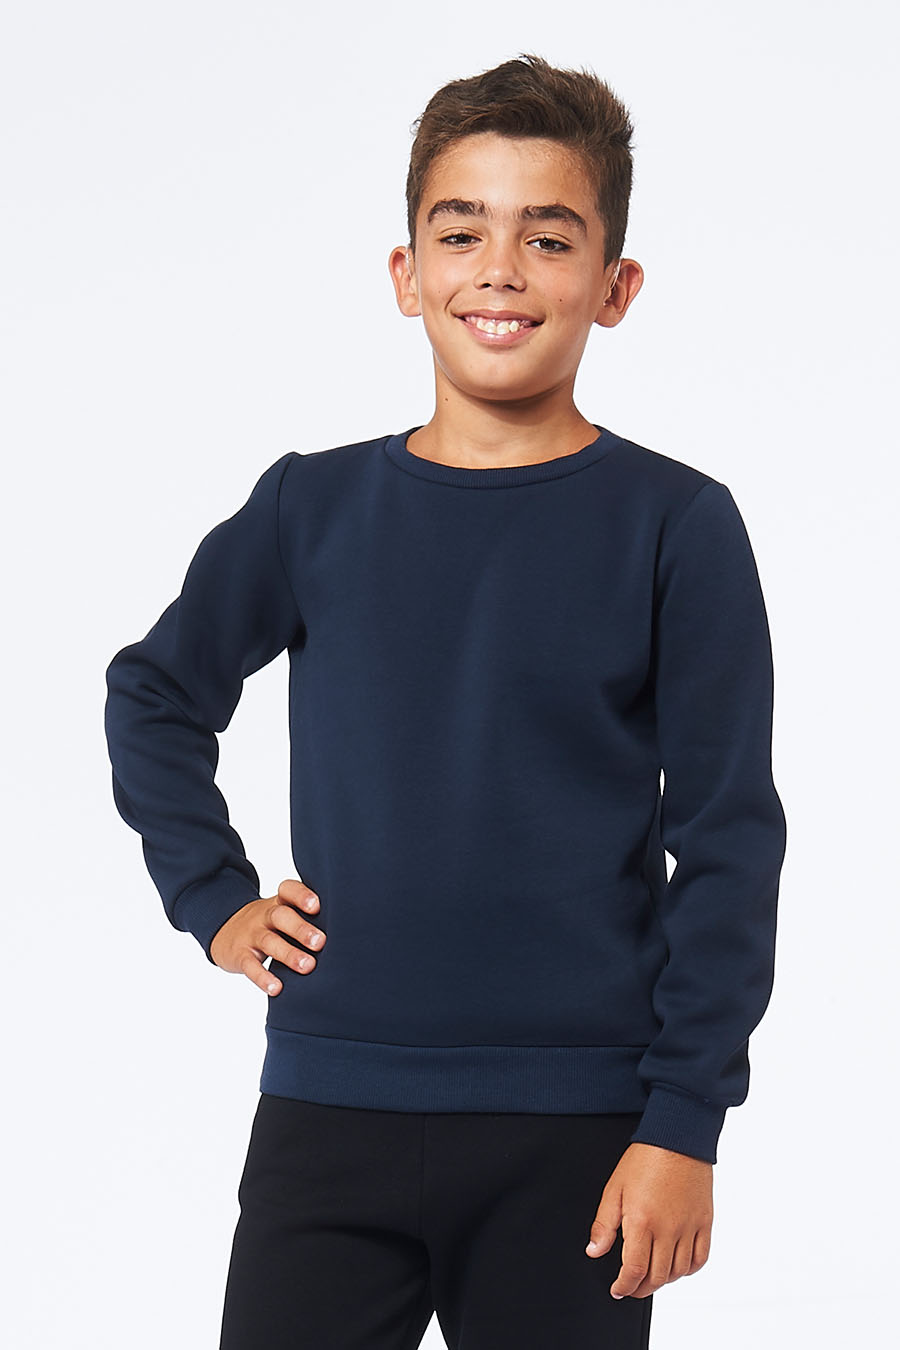 Sweatshirt made in France en molleton gratté ARMAND marine enfant qui sourit - FIL ROUGE